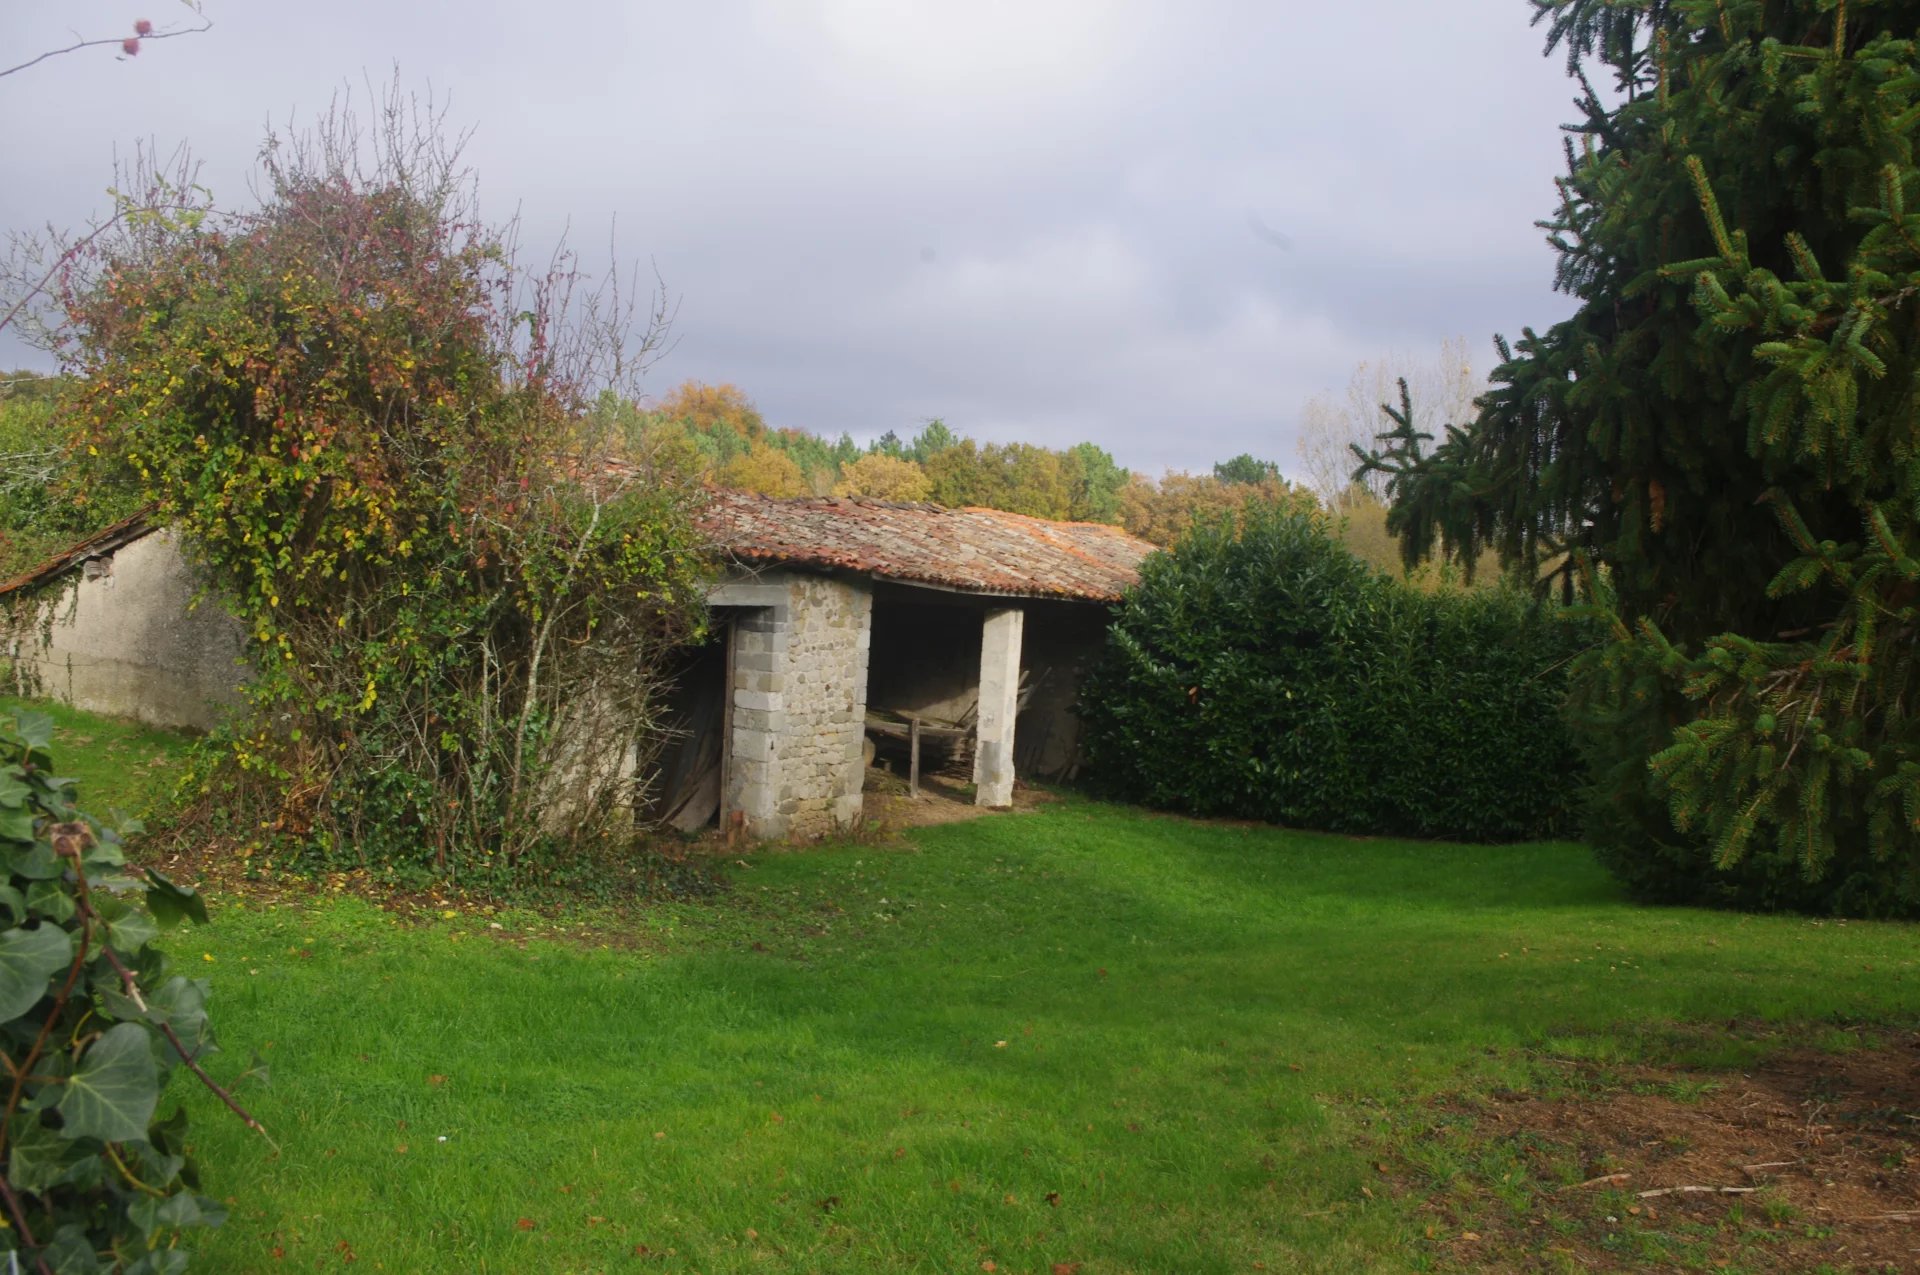 2 Barns for Renovation